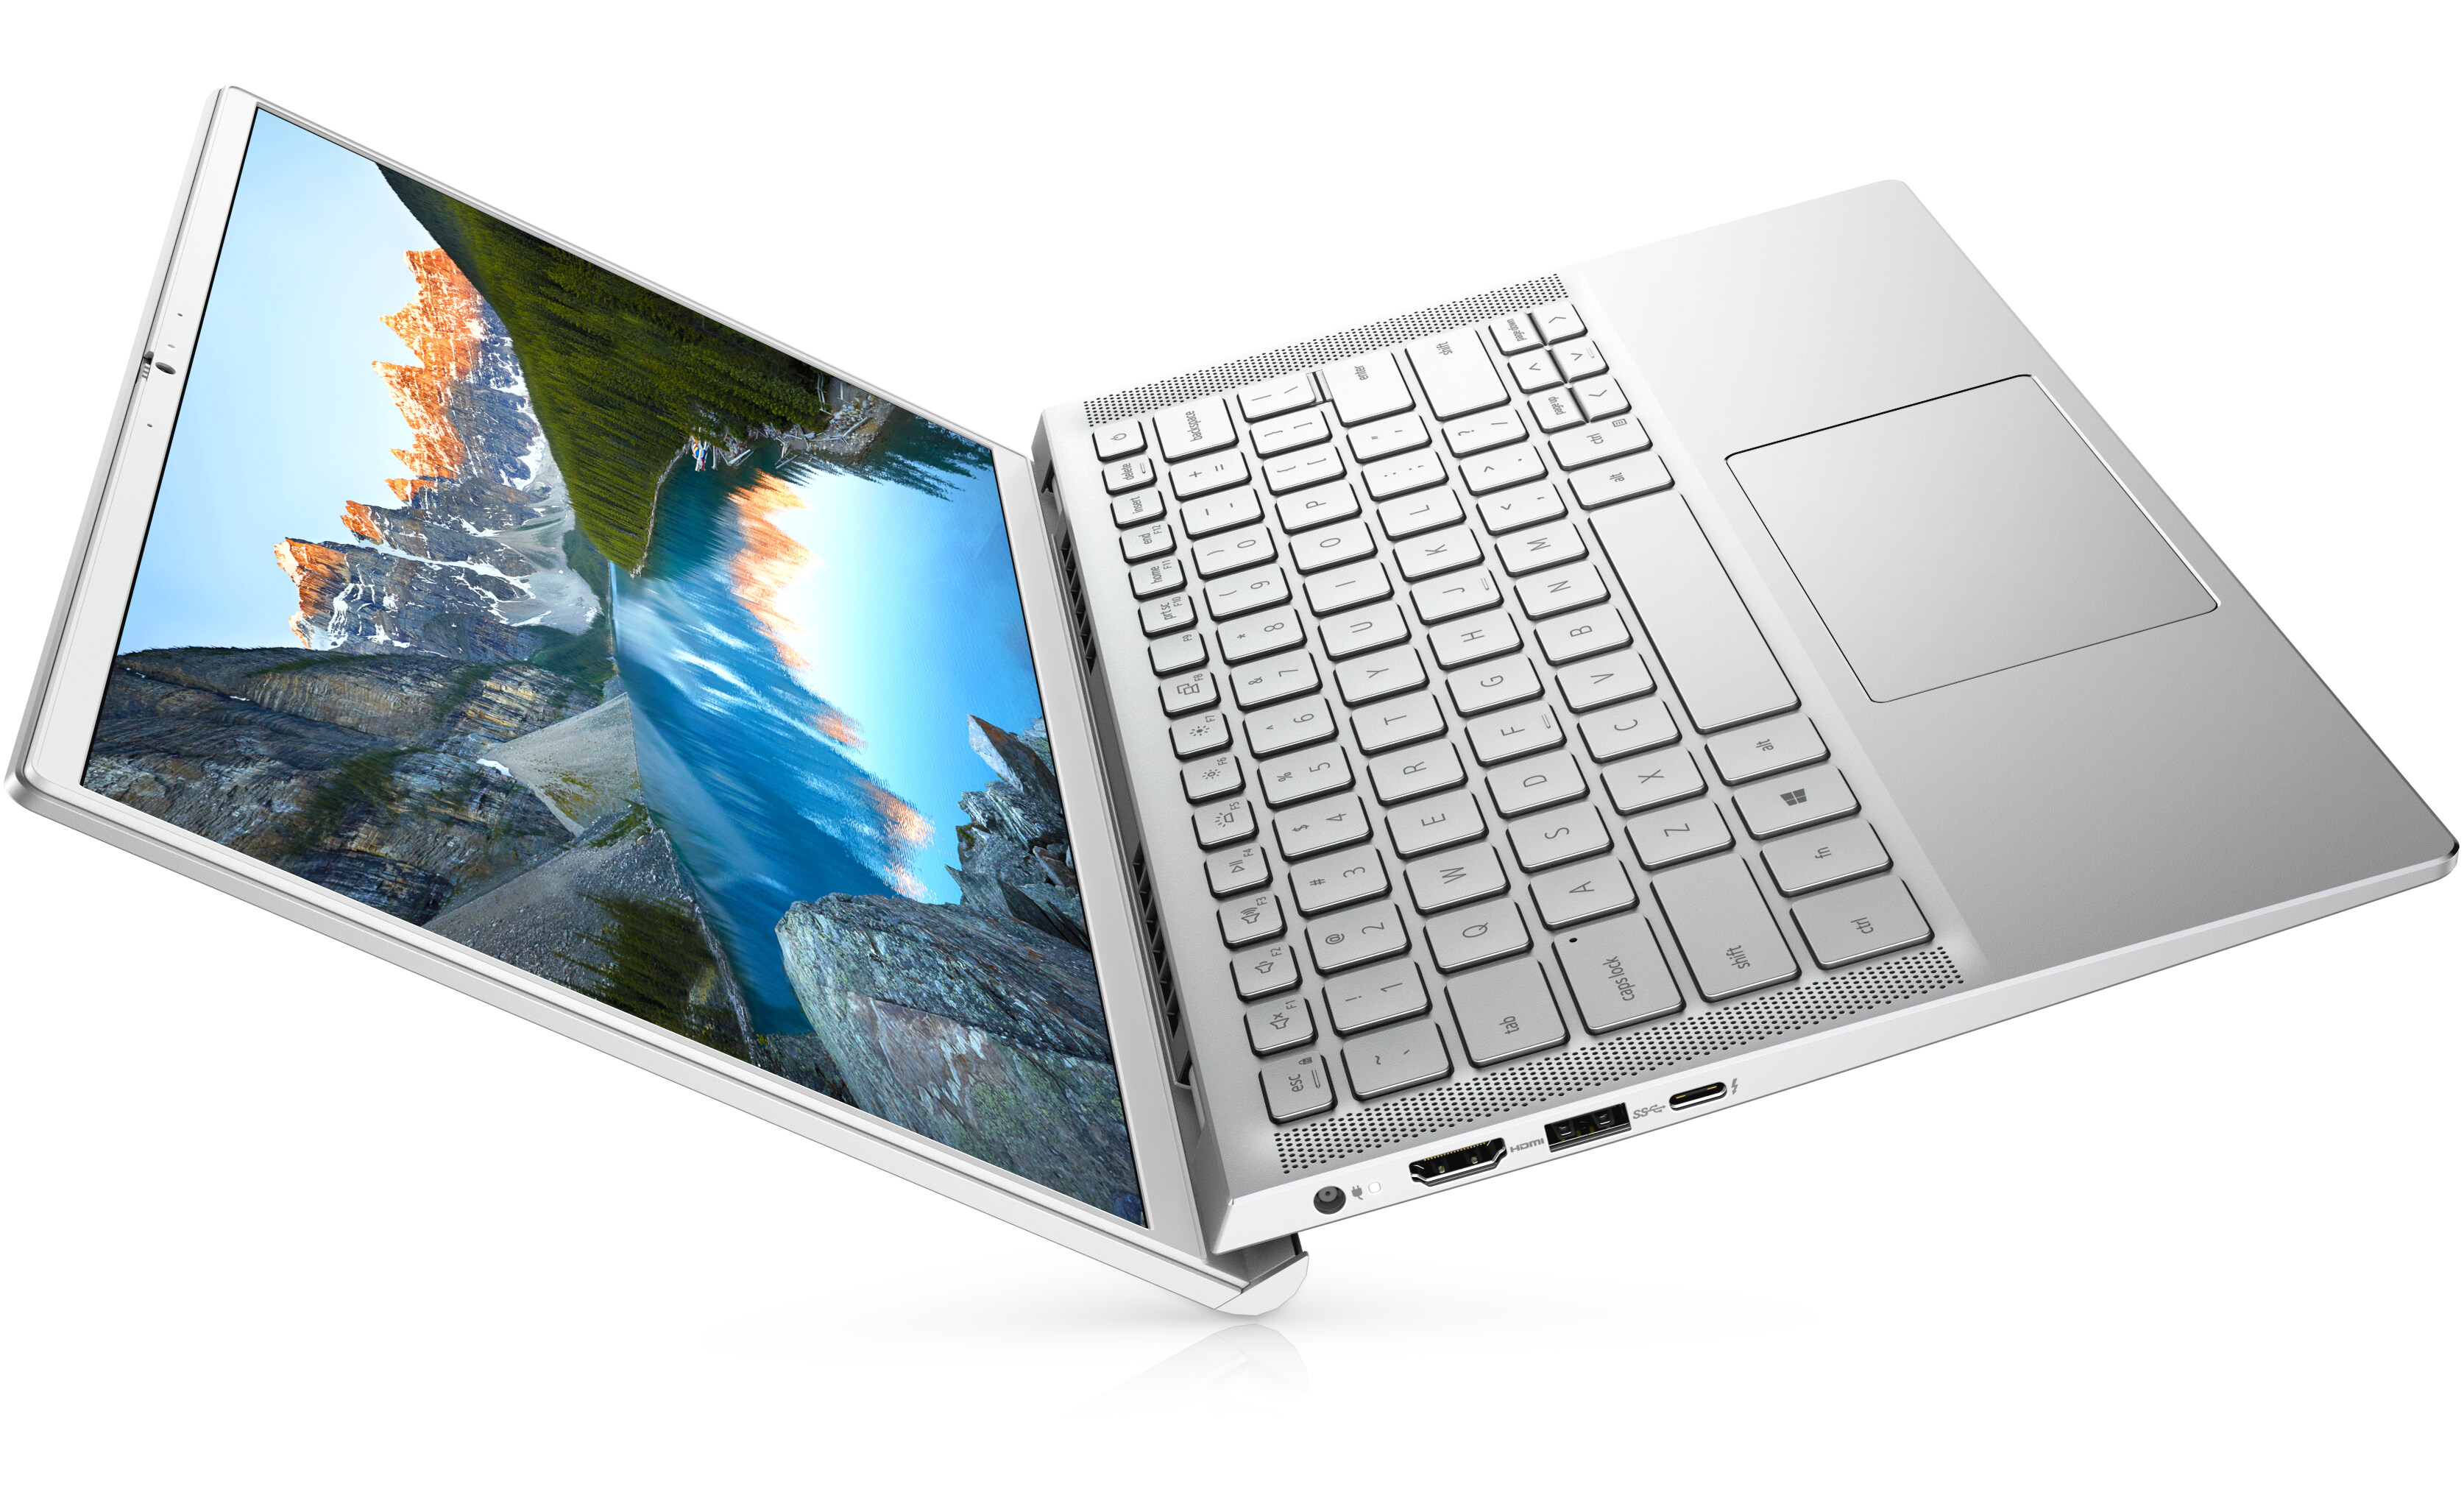 Dell Inspiron 13 7000 (7300) Laptop | Dell Australia